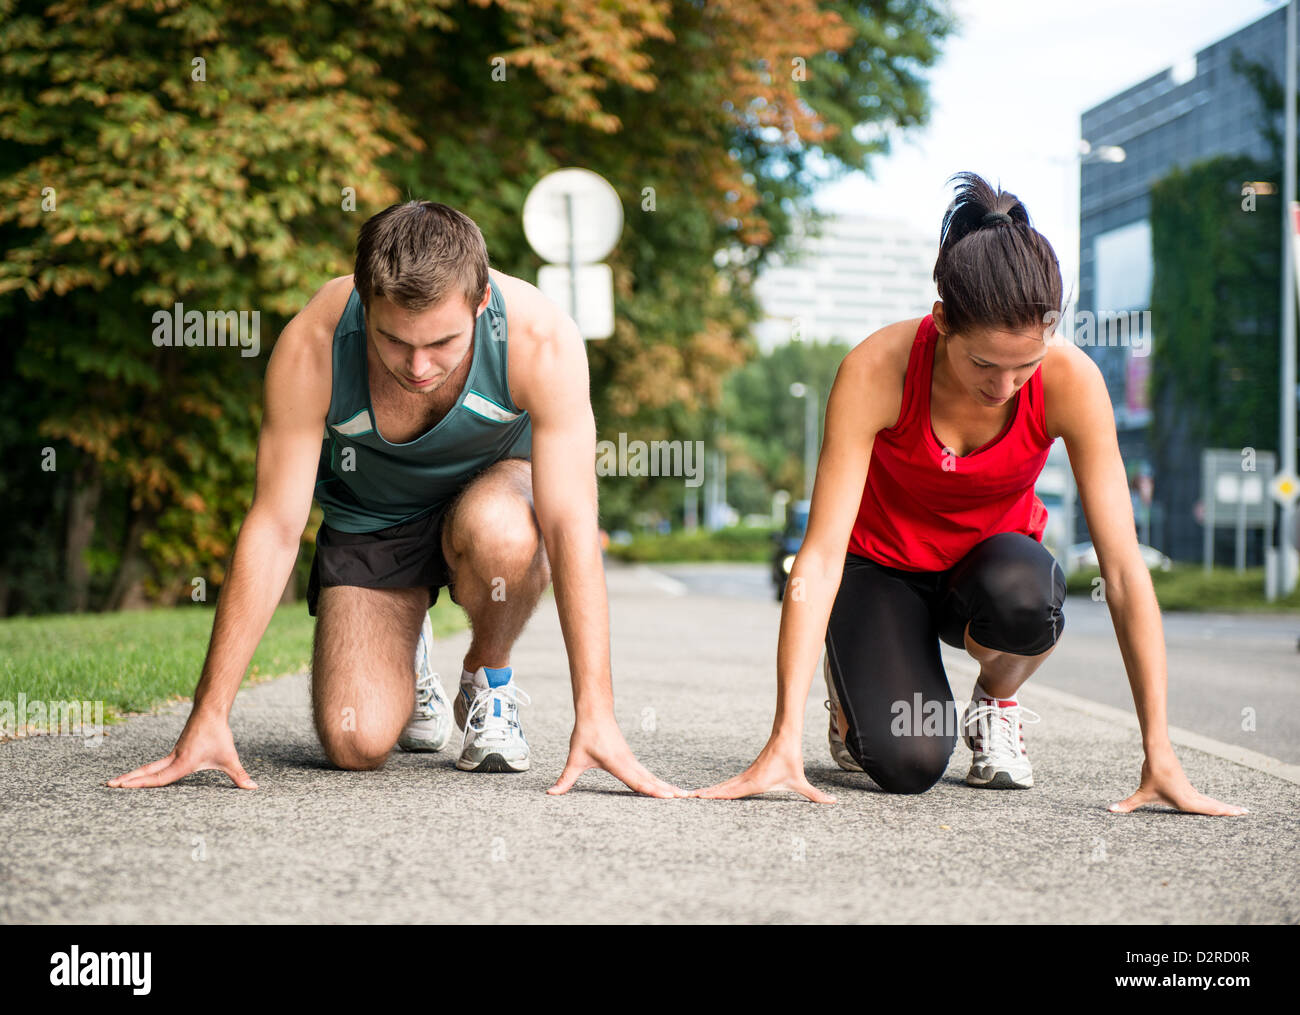 Junge sport paar ab Position vorbereitet zu konkurrieren und laufen Stockfoto